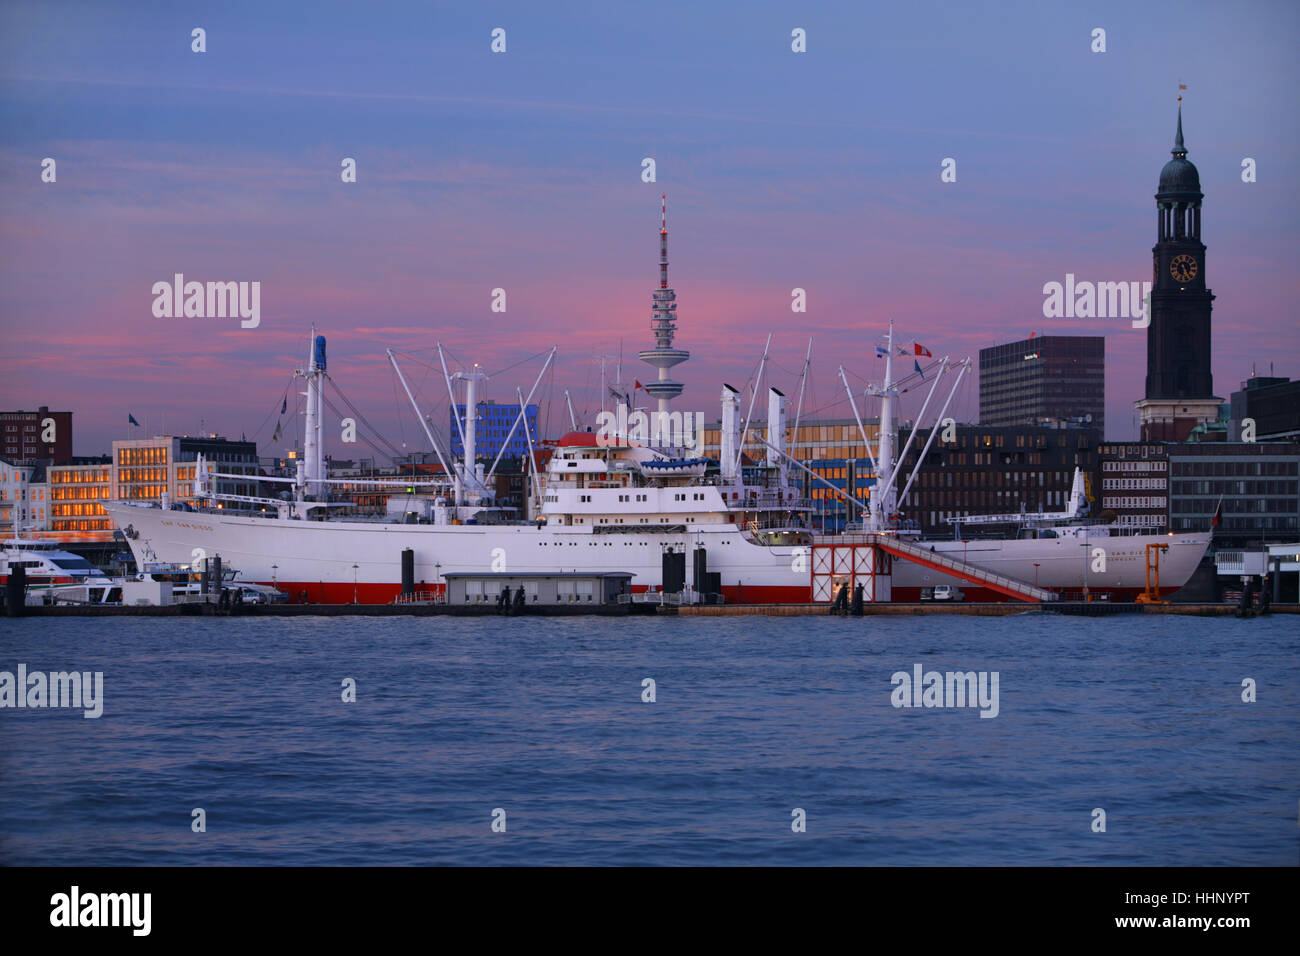 Fiume Elba nel porto di Amburgo, Germania; con nave museo / freighter 'Cap San Diego', la torre della TV, chiesa di San Michele (St. Michaelis) Foto Stock